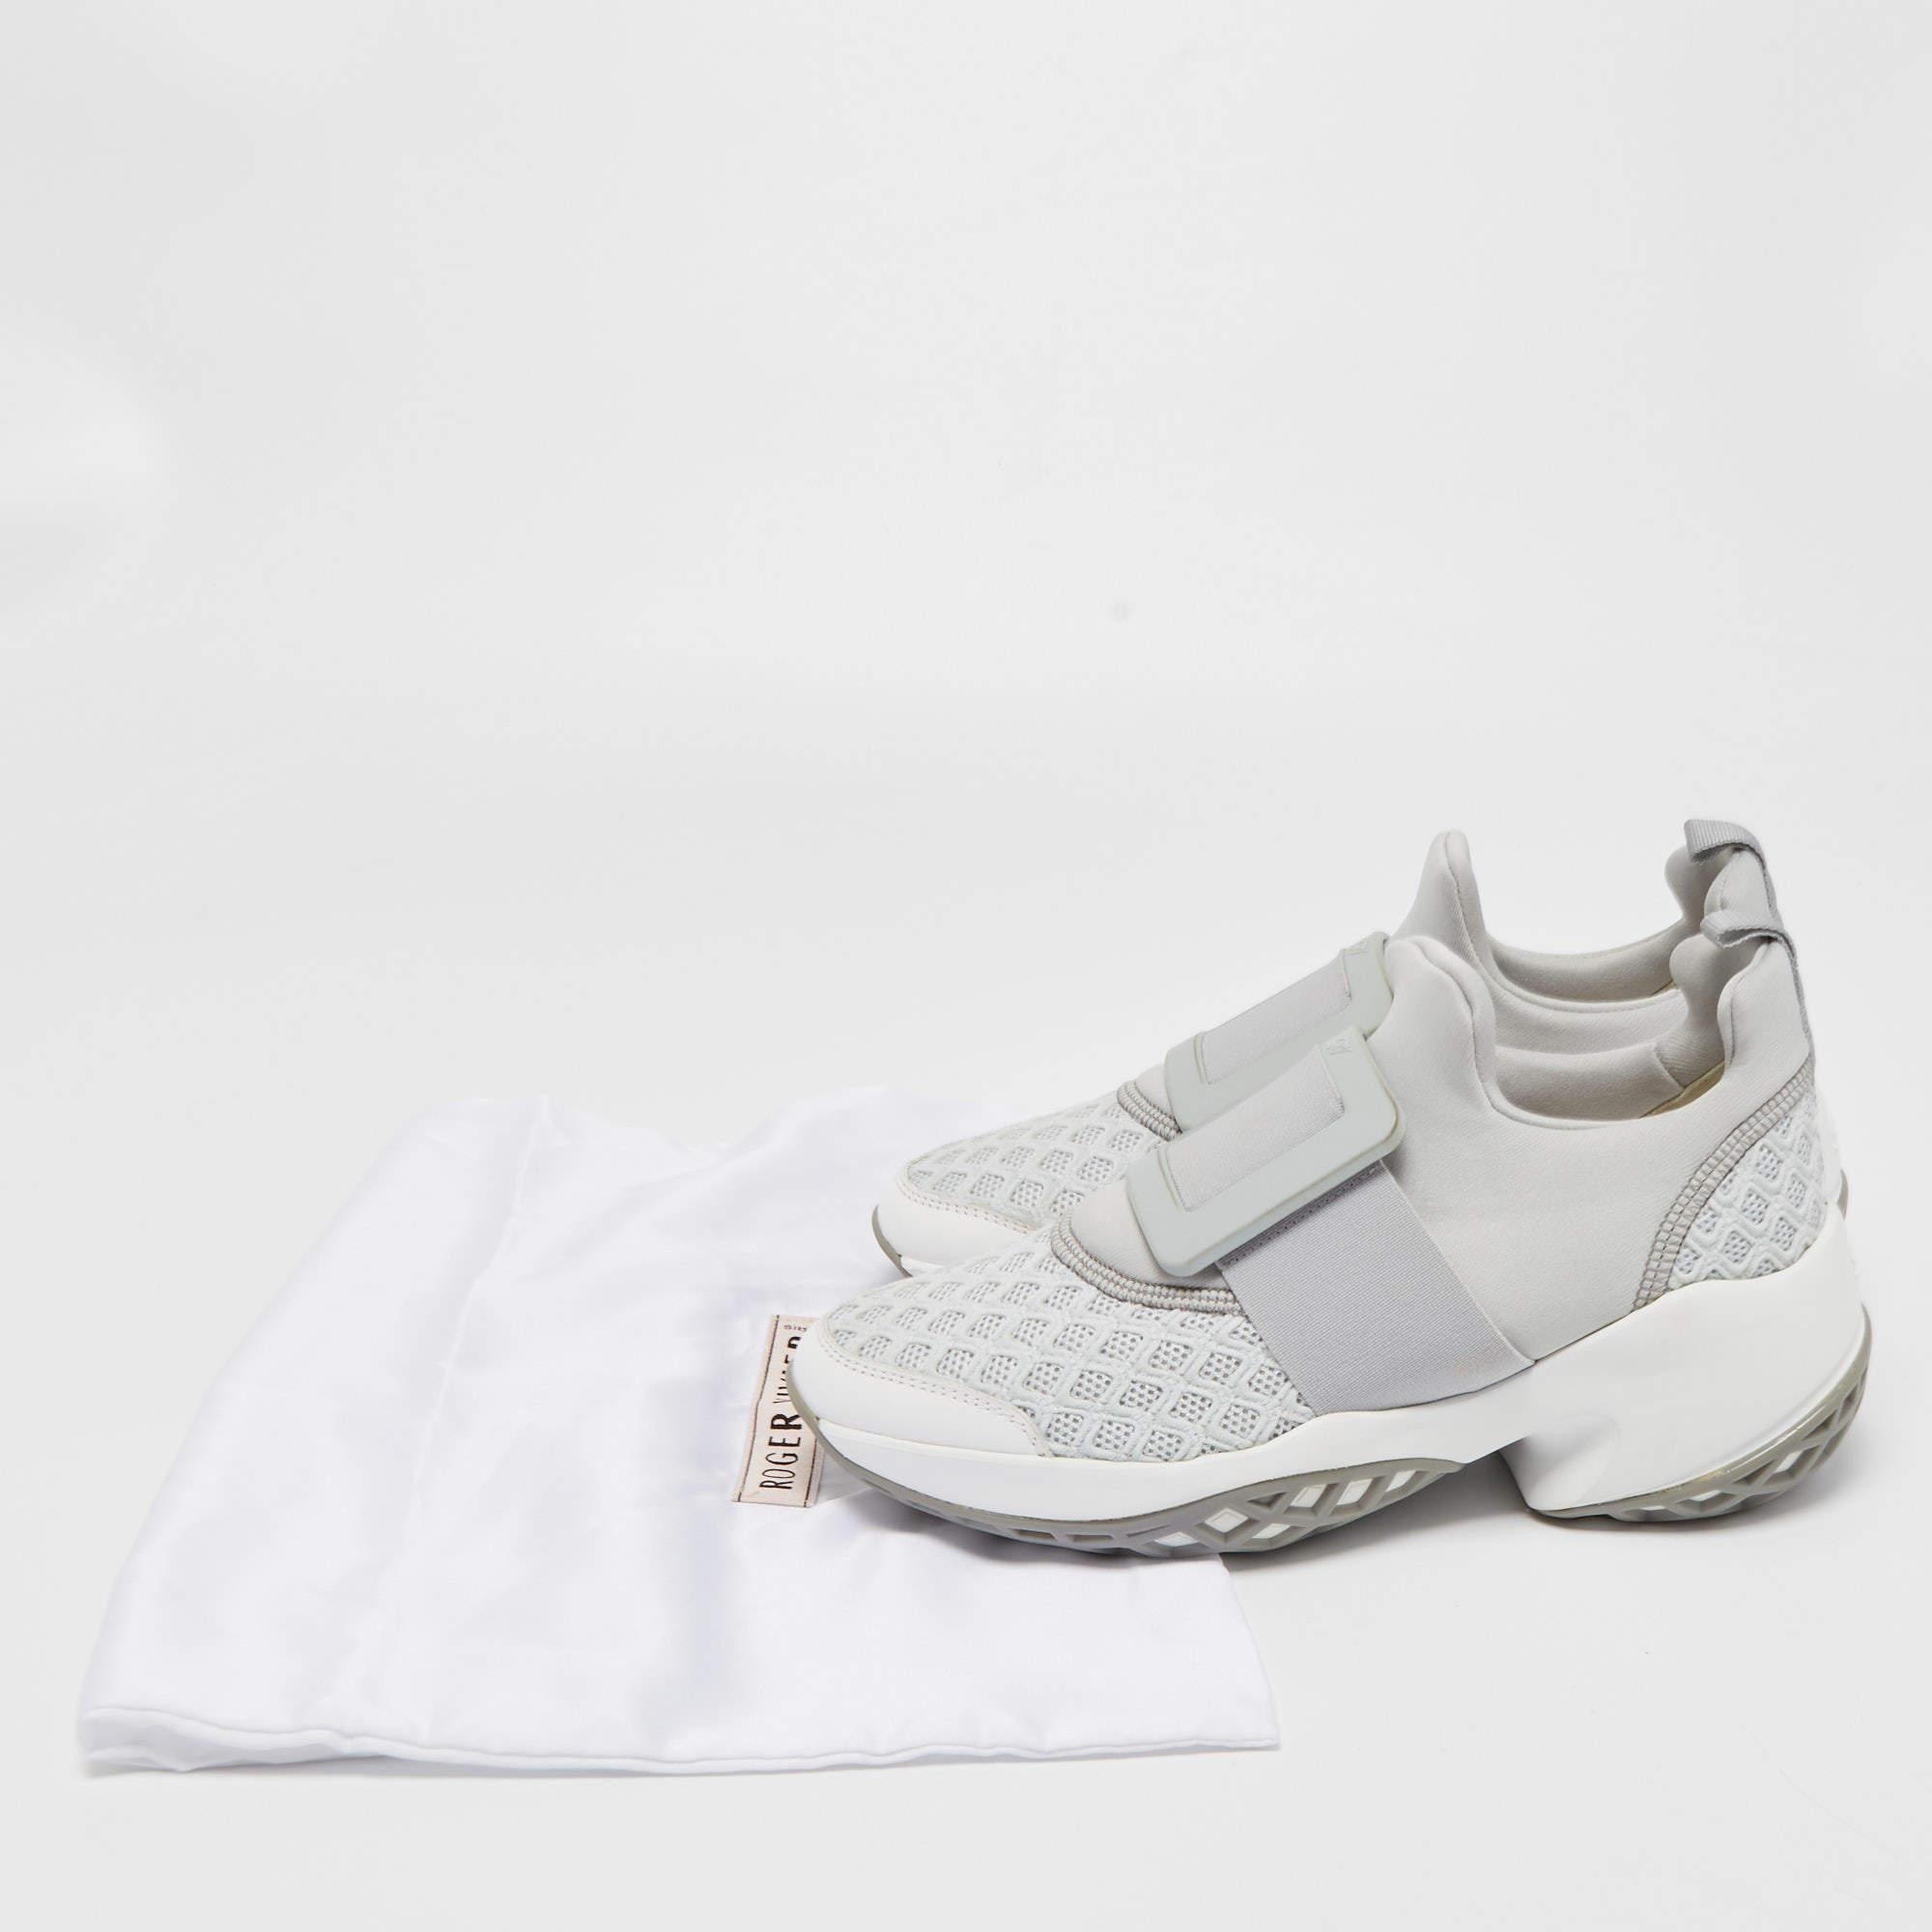 Roger Vivier Grey/White Mesh and Neoprene Viv Run Sneakers Size 37 2